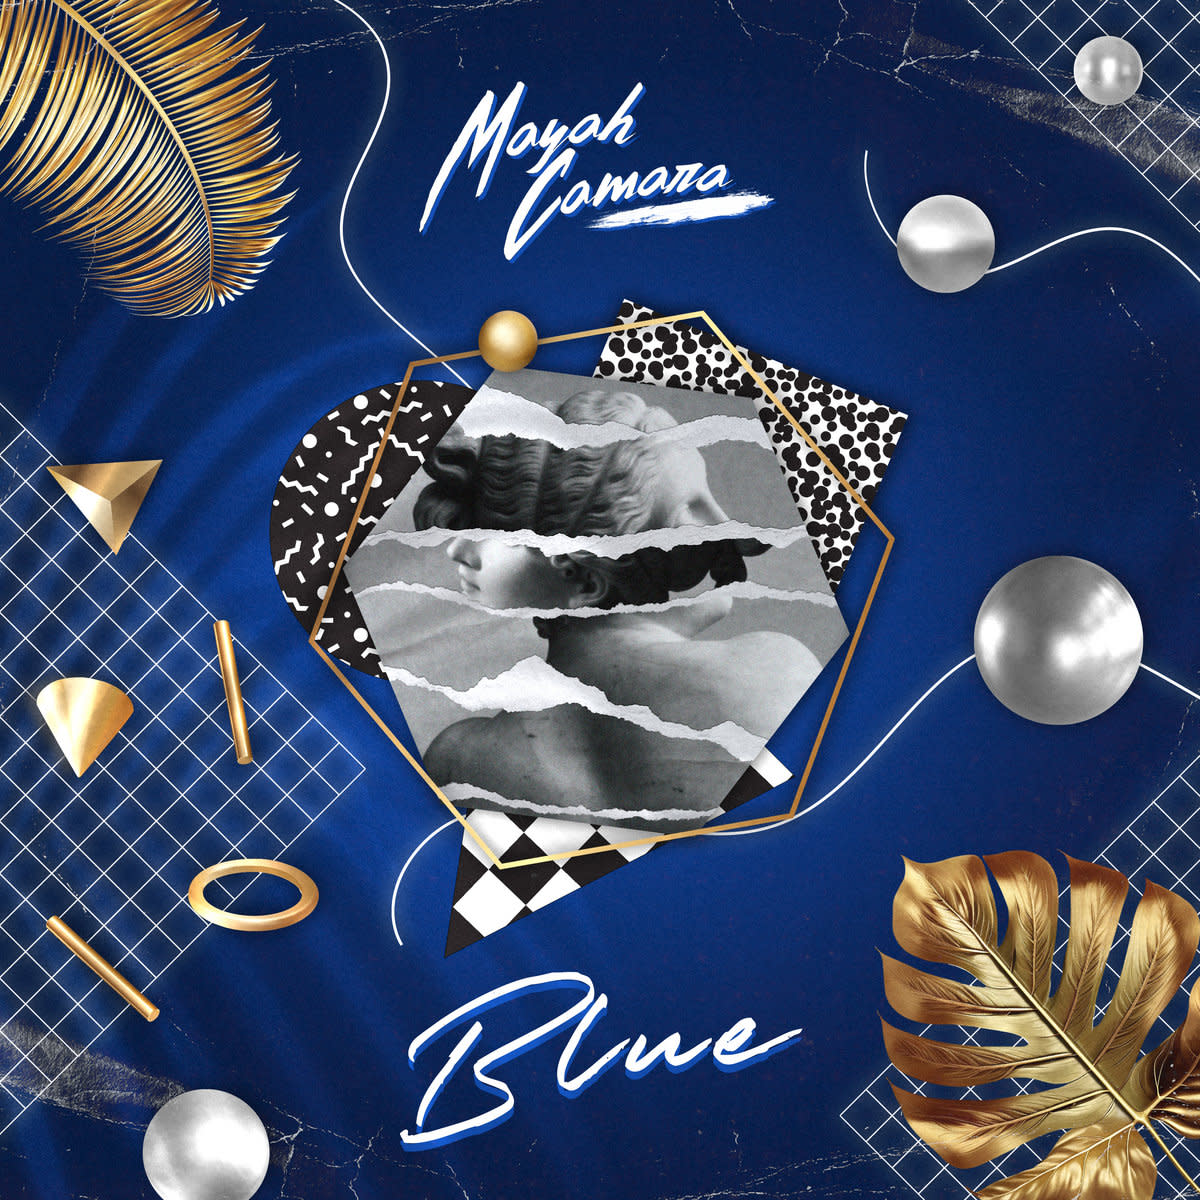 Synth Single Review: “Blue” by Mayah Camara